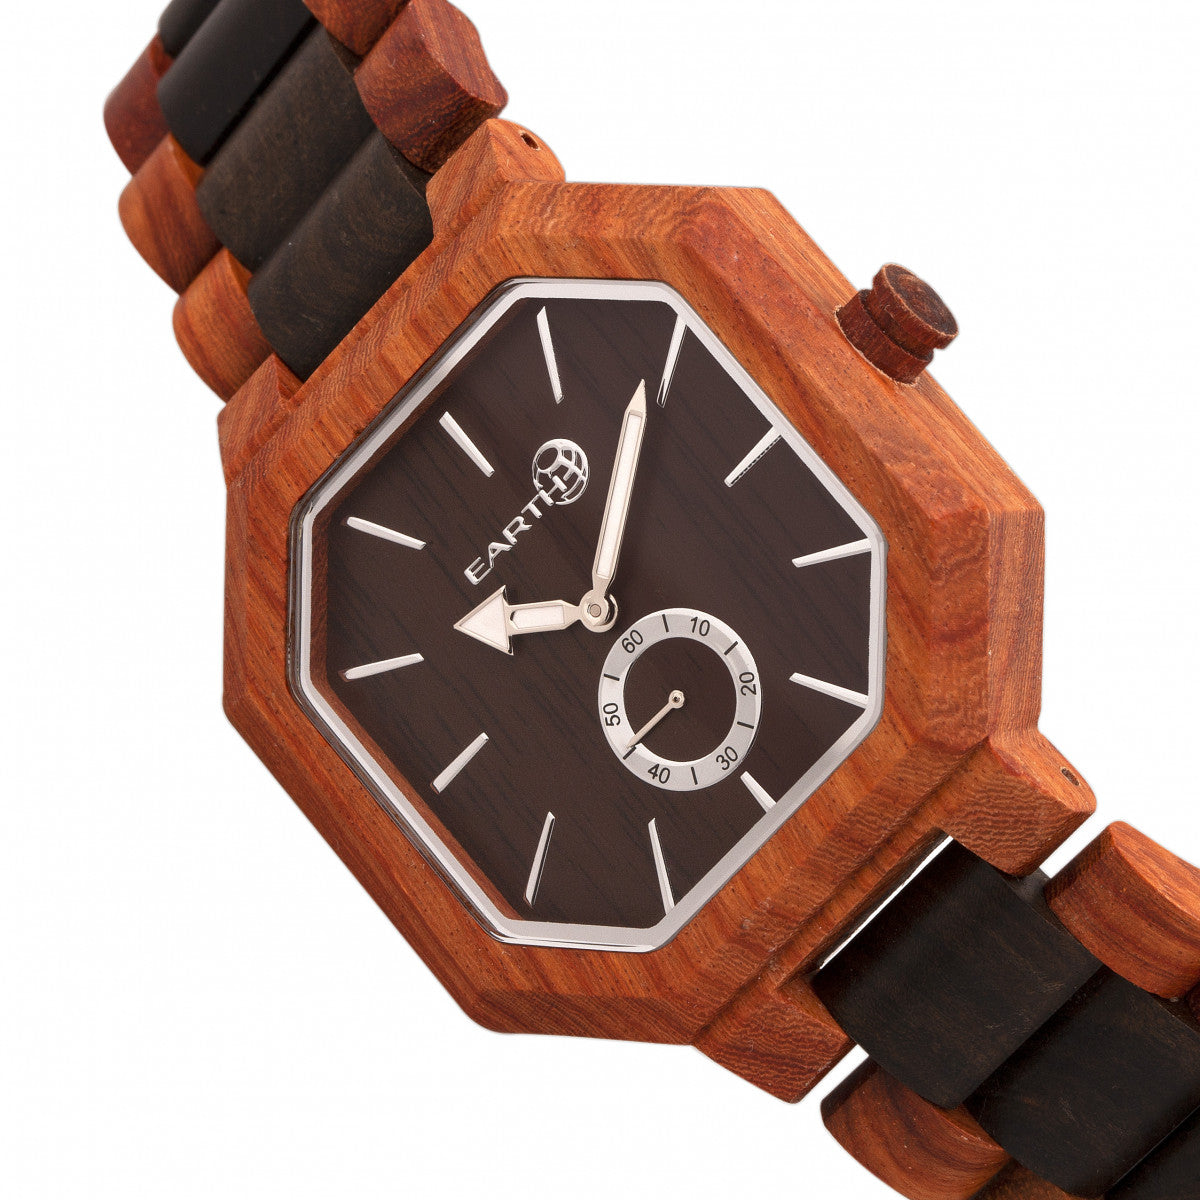 Earth Wood Acadia Bracelet Watch - Dark Brown/Red - ETHEW4705